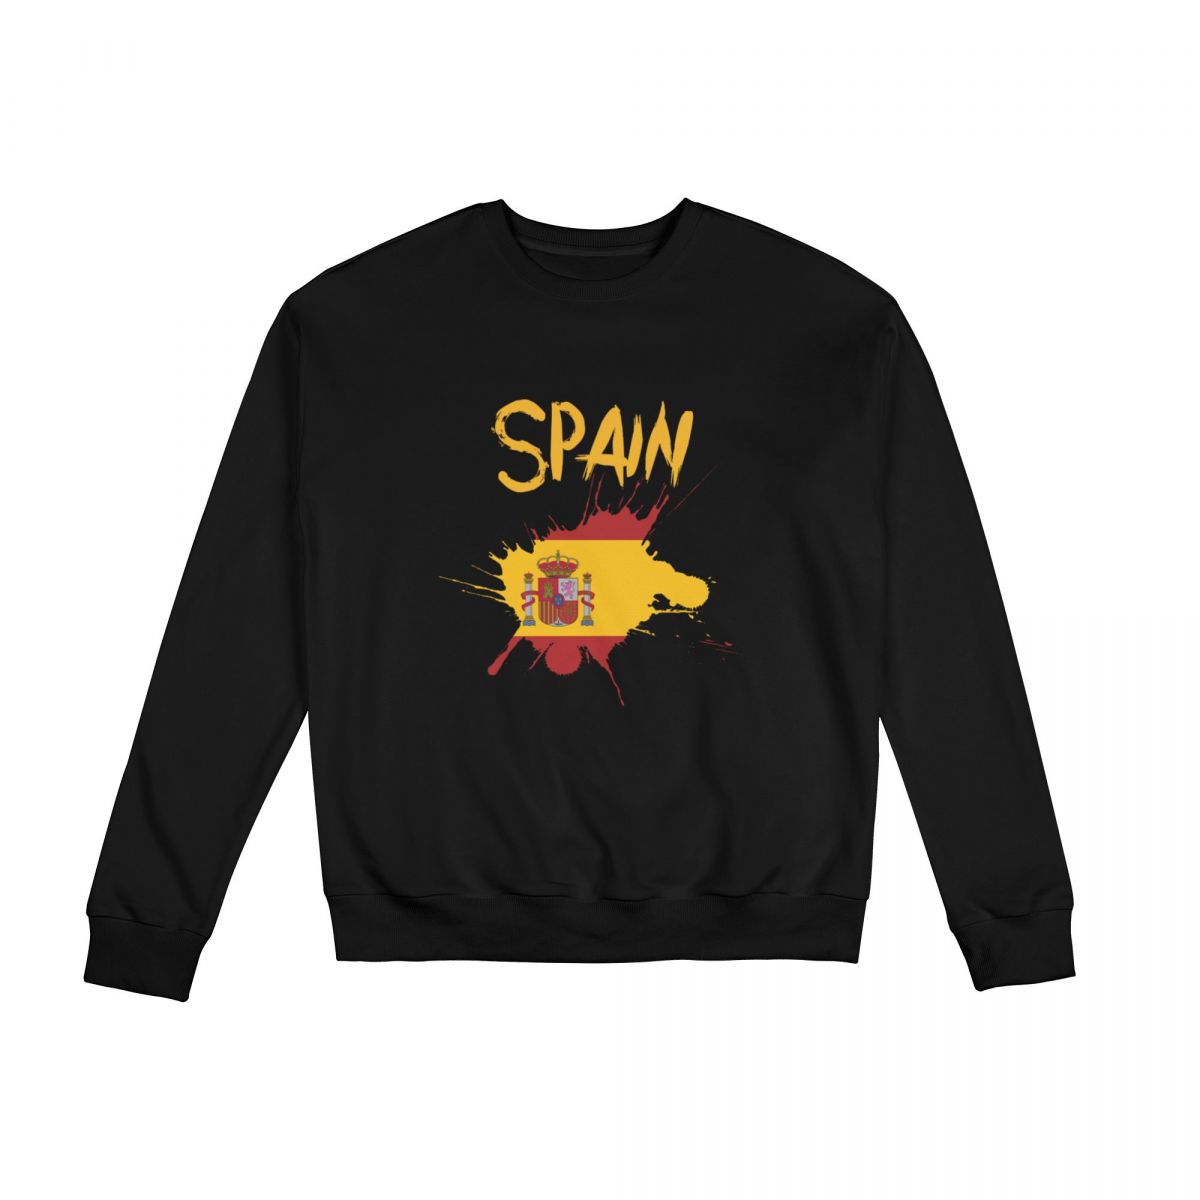 Spain Ink Spatter Sweatshirt Round Neck Tops